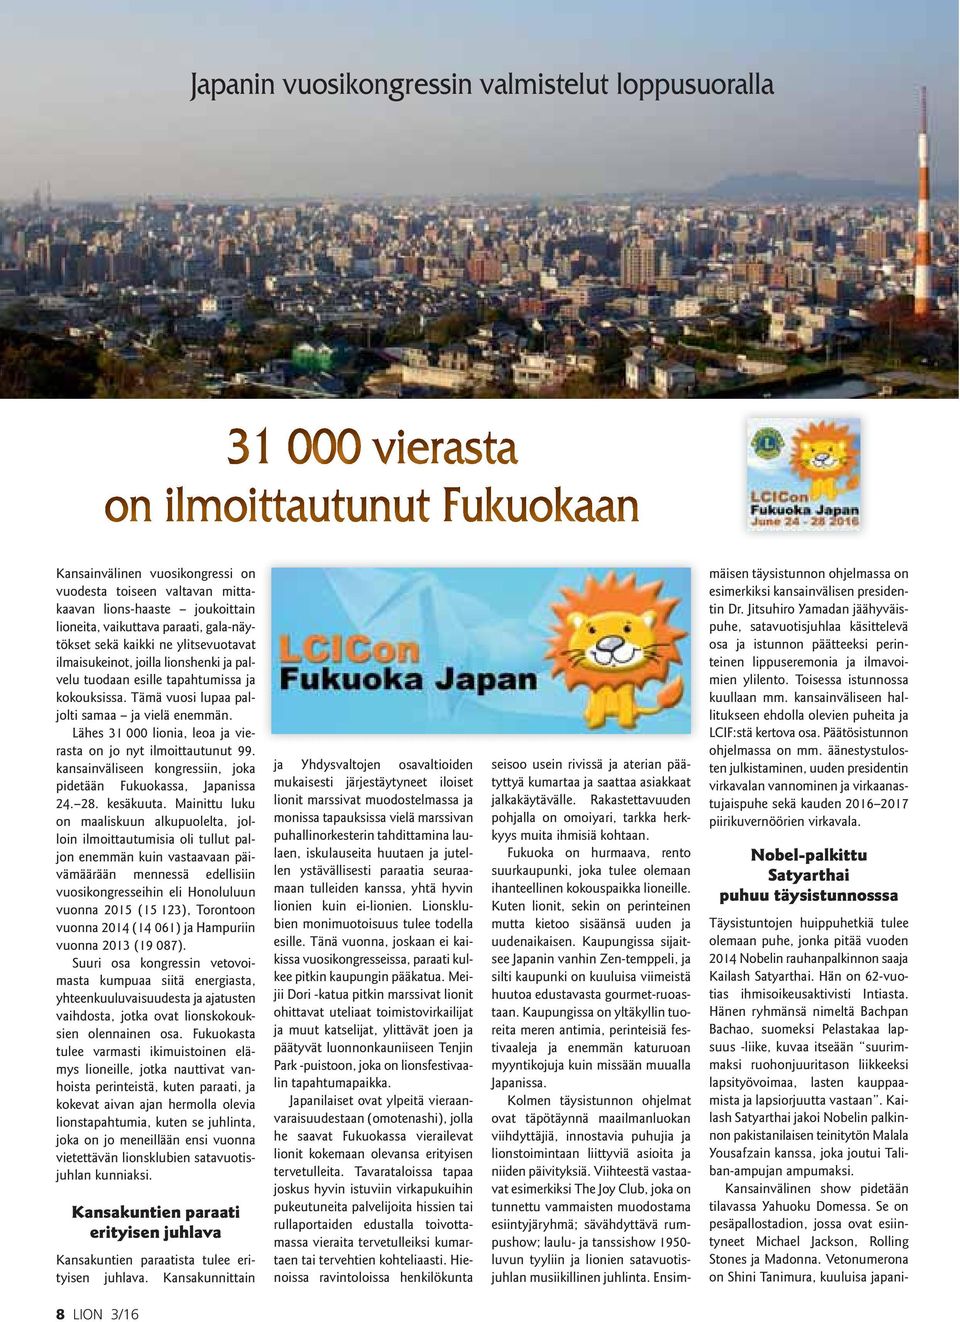 Lähes 31 000 lionia, leoa ja vierasta on jo nyt ilmoittautunut 99. kansainväliseen kongressiin, joka pidetään Fukuokassa, Japanissa 24. 28. kesäkuuta.